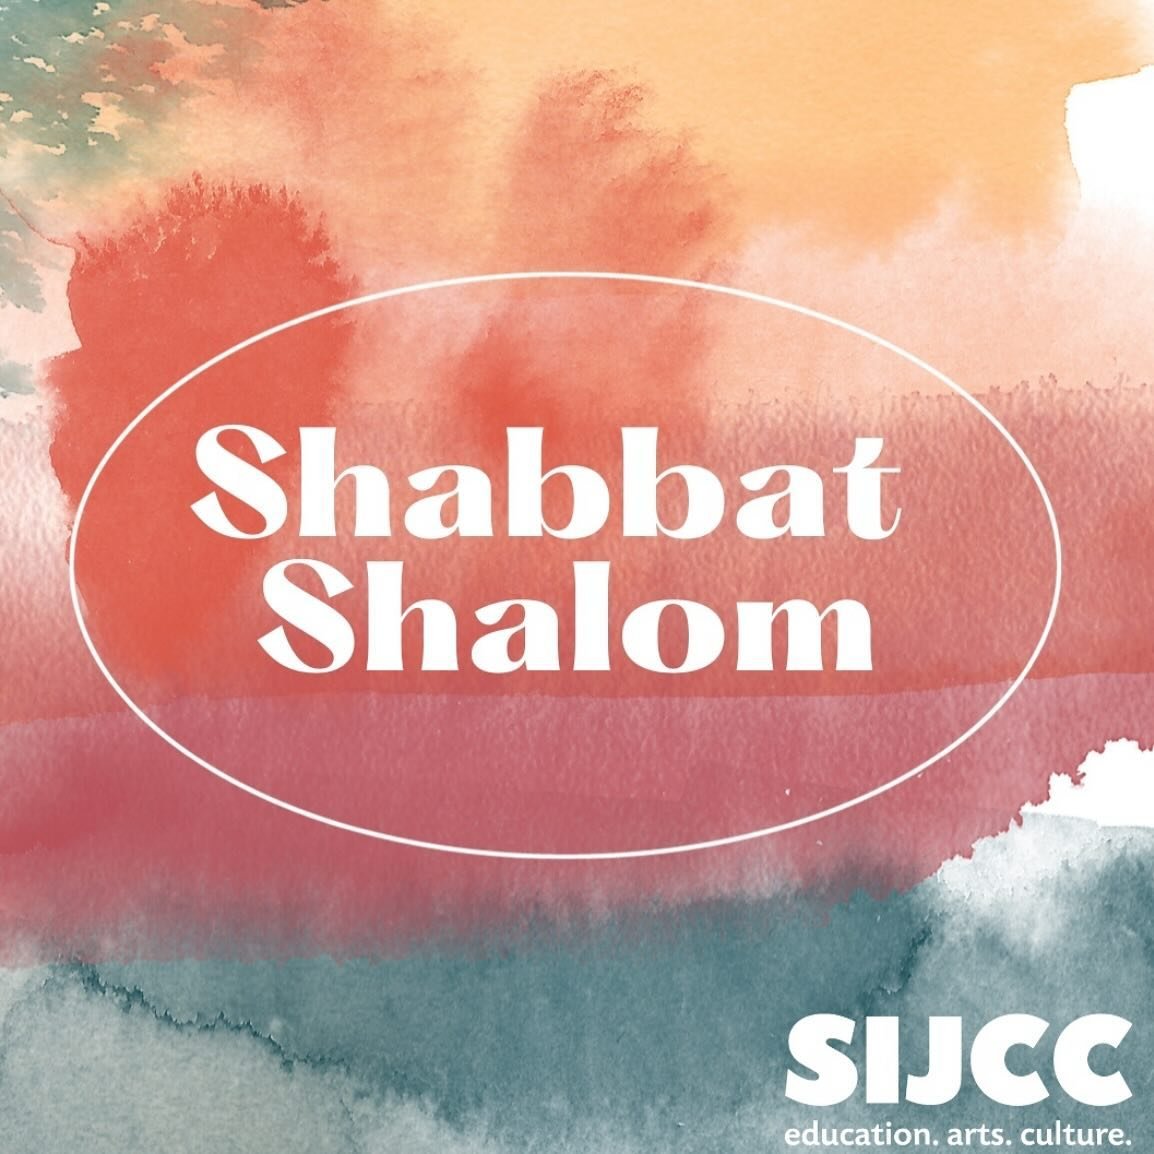 ✨ Shabbat Shalom ✨